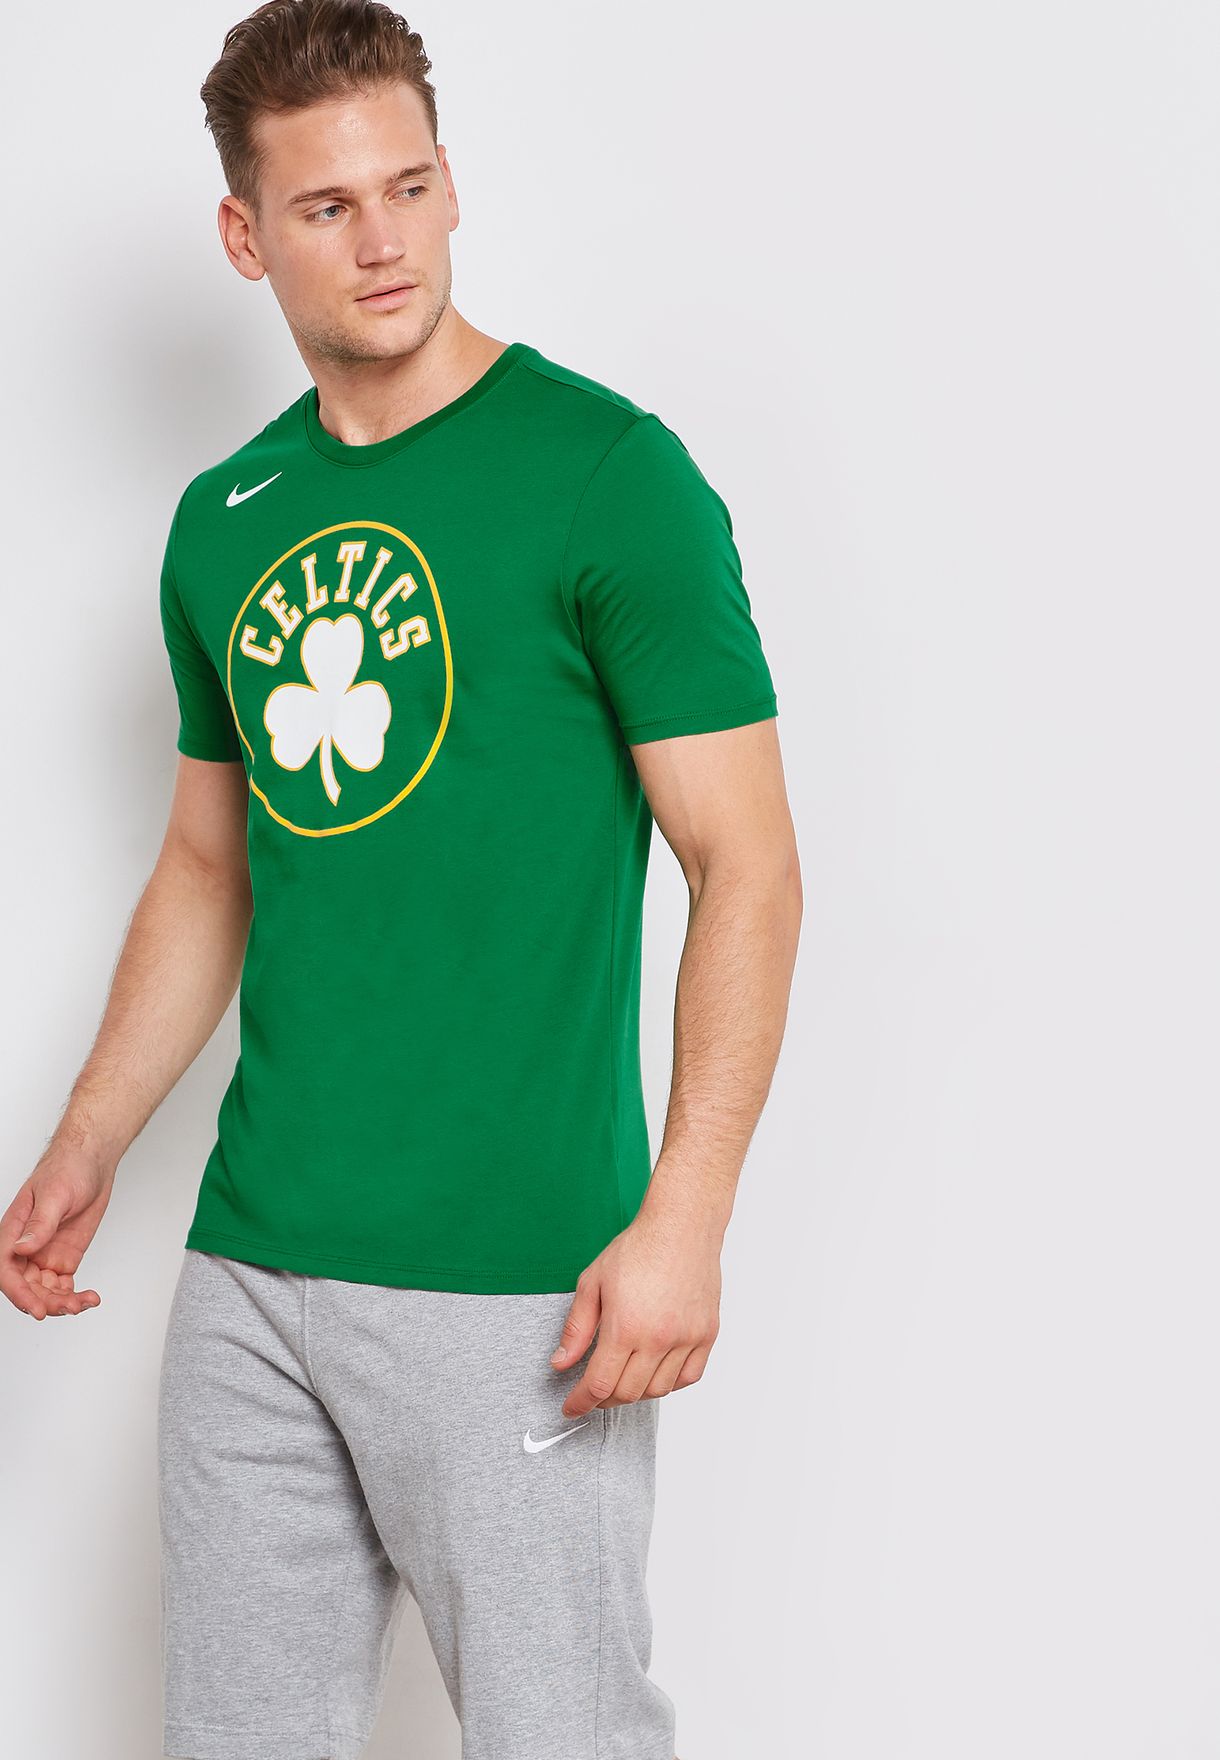 celtics t shirt nike